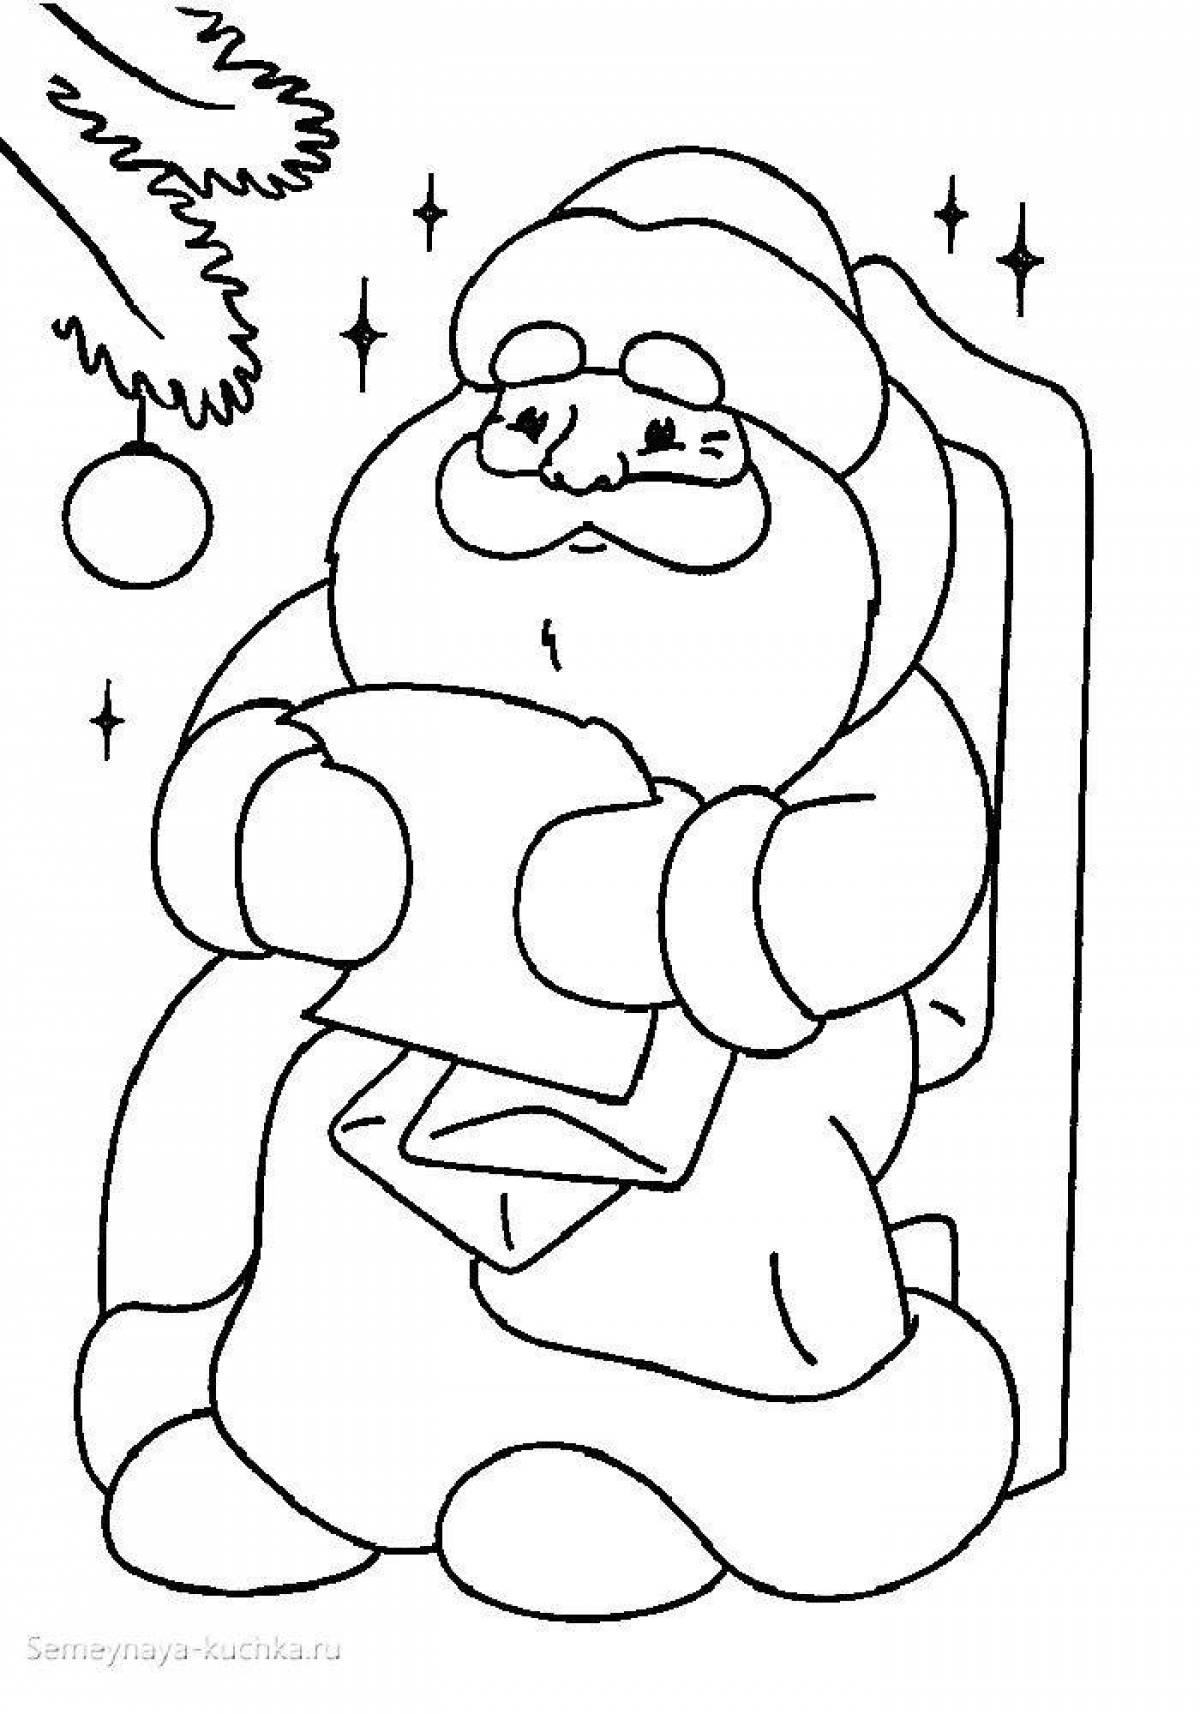 Santa Claus drawing #1